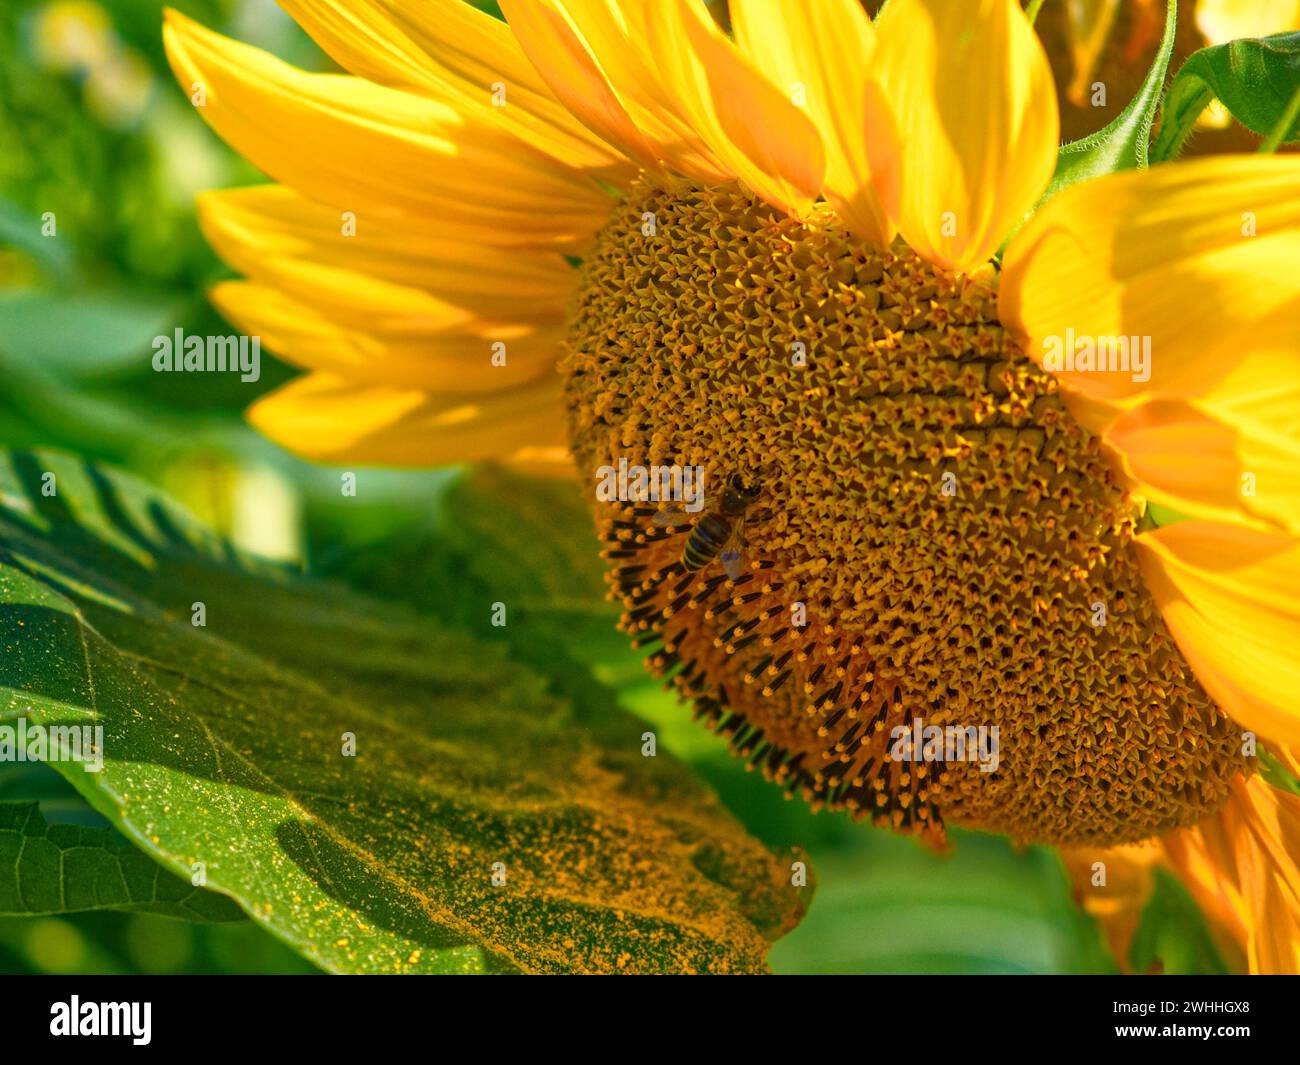 Eine Biene ist auf einer Sonnenblume und sammelt Pollen aus ihrem komplexen, mit Samen gefüllten Zentrum, umgeben von leuchtend gelben Blütenblättern. Stockfoto